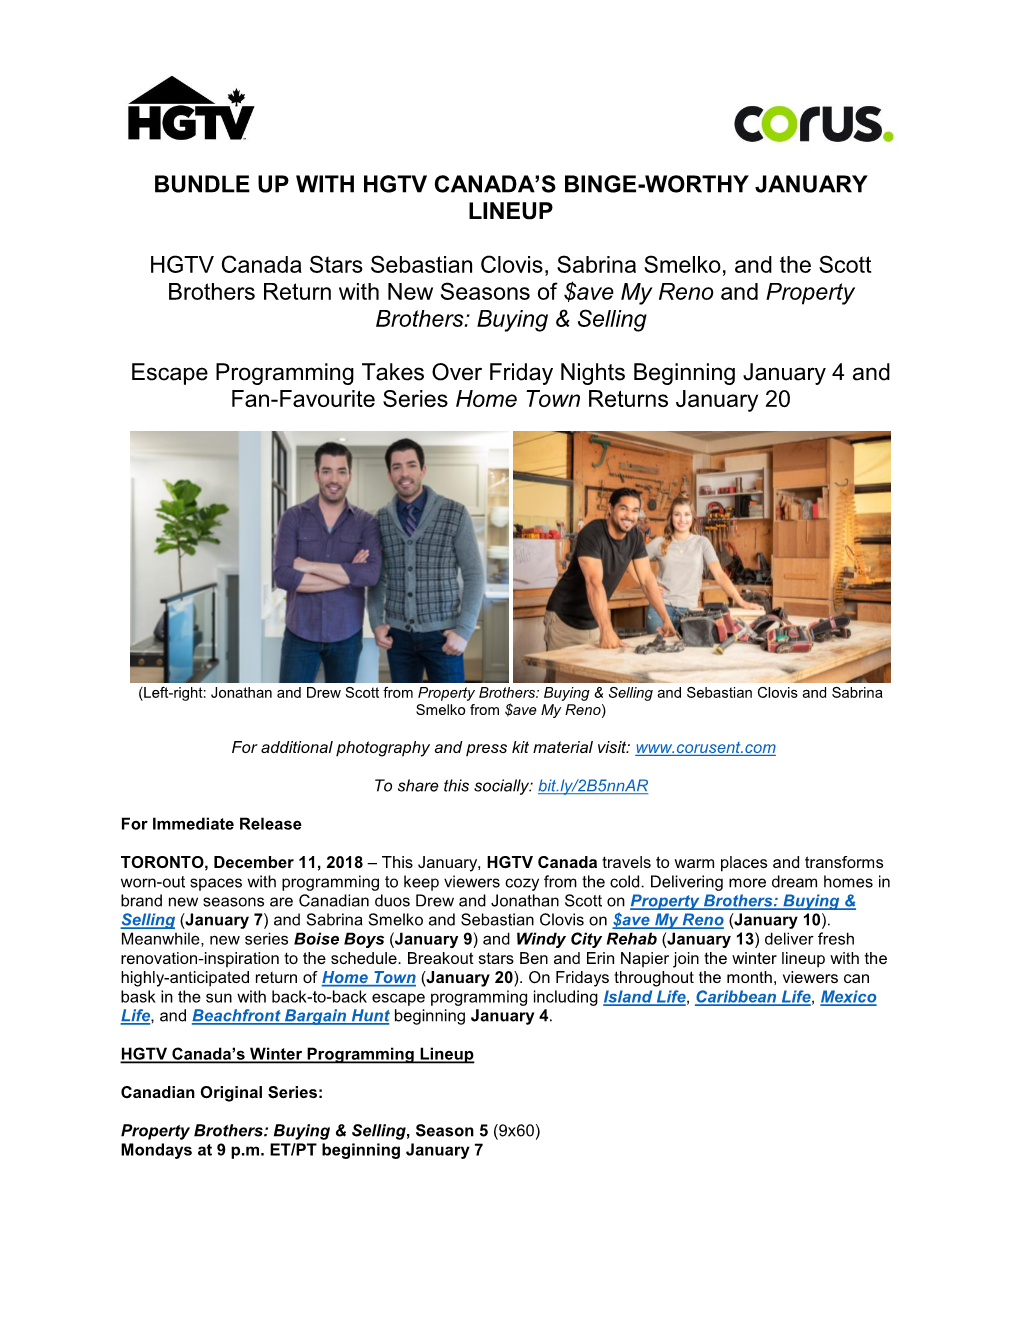 HGTV-Canada-Winter-Programming